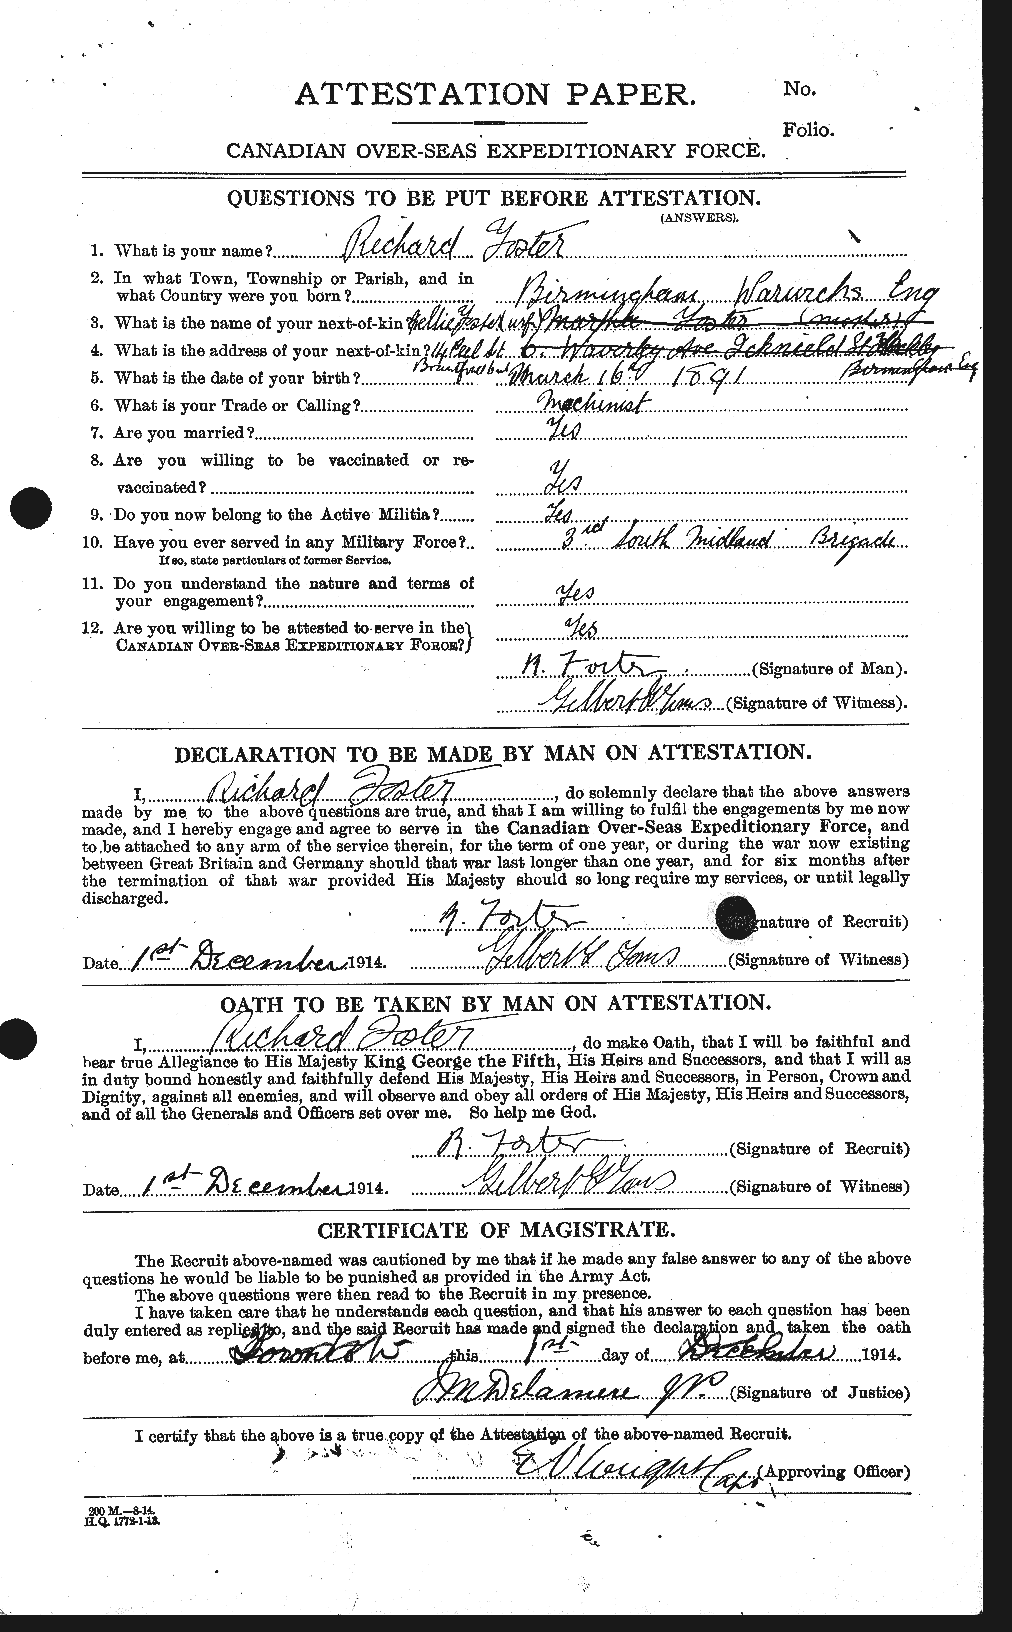 Dossiers du Personnel de la Première Guerre mondiale - CEC 333452a